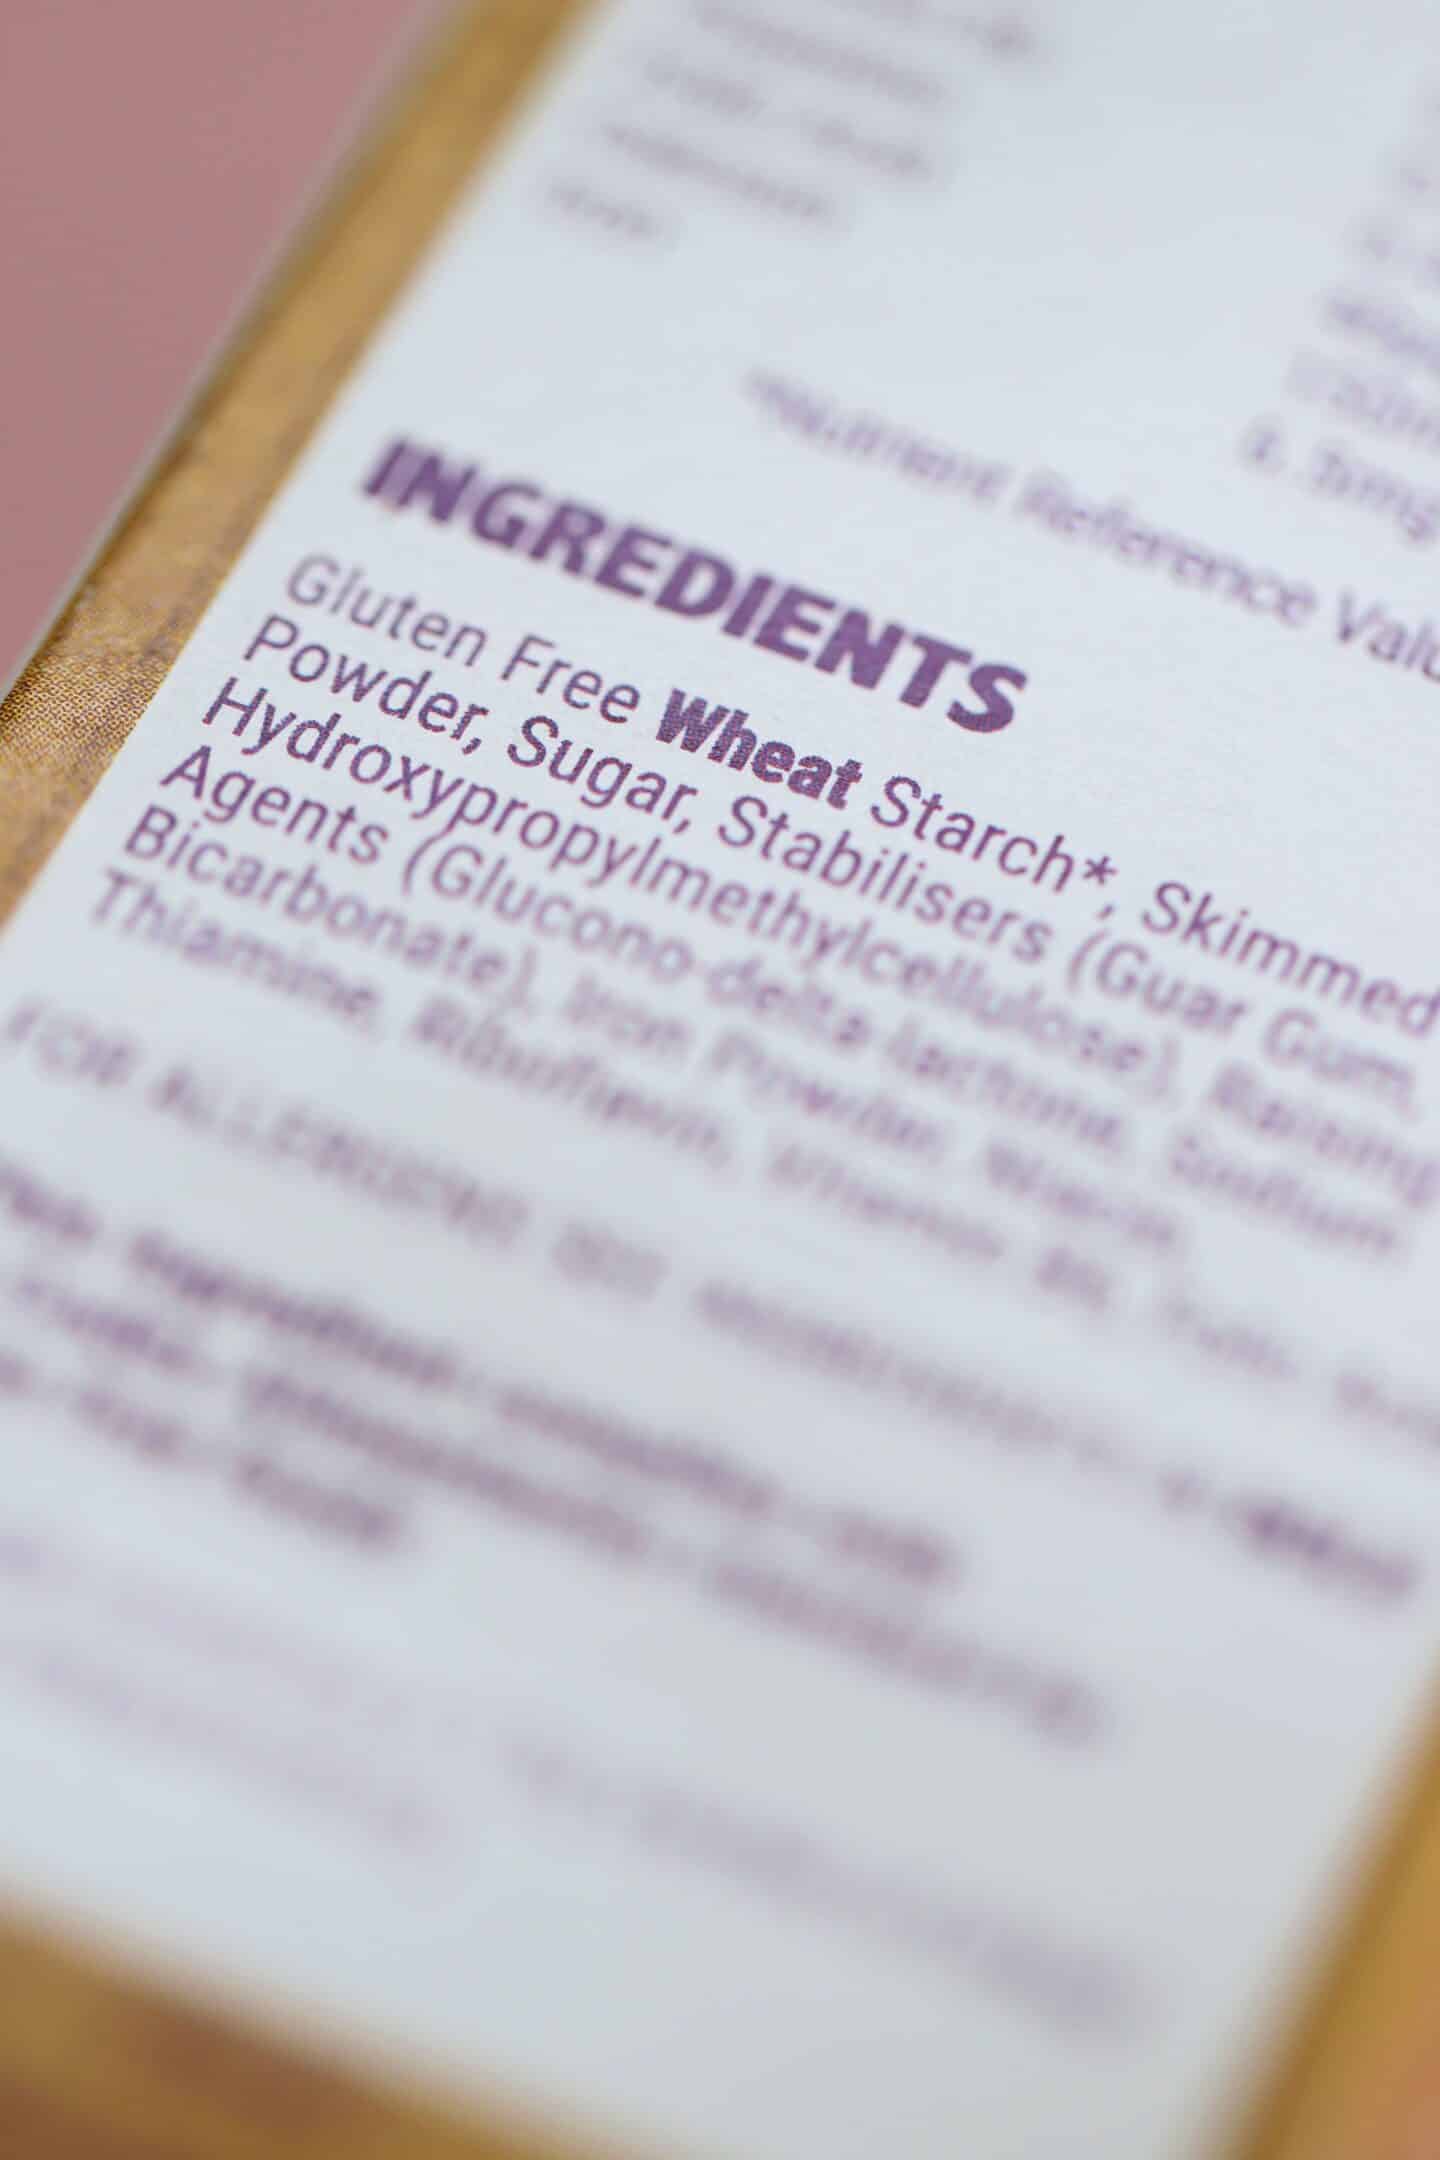 Ingredients list showing gluten free wheat starch.